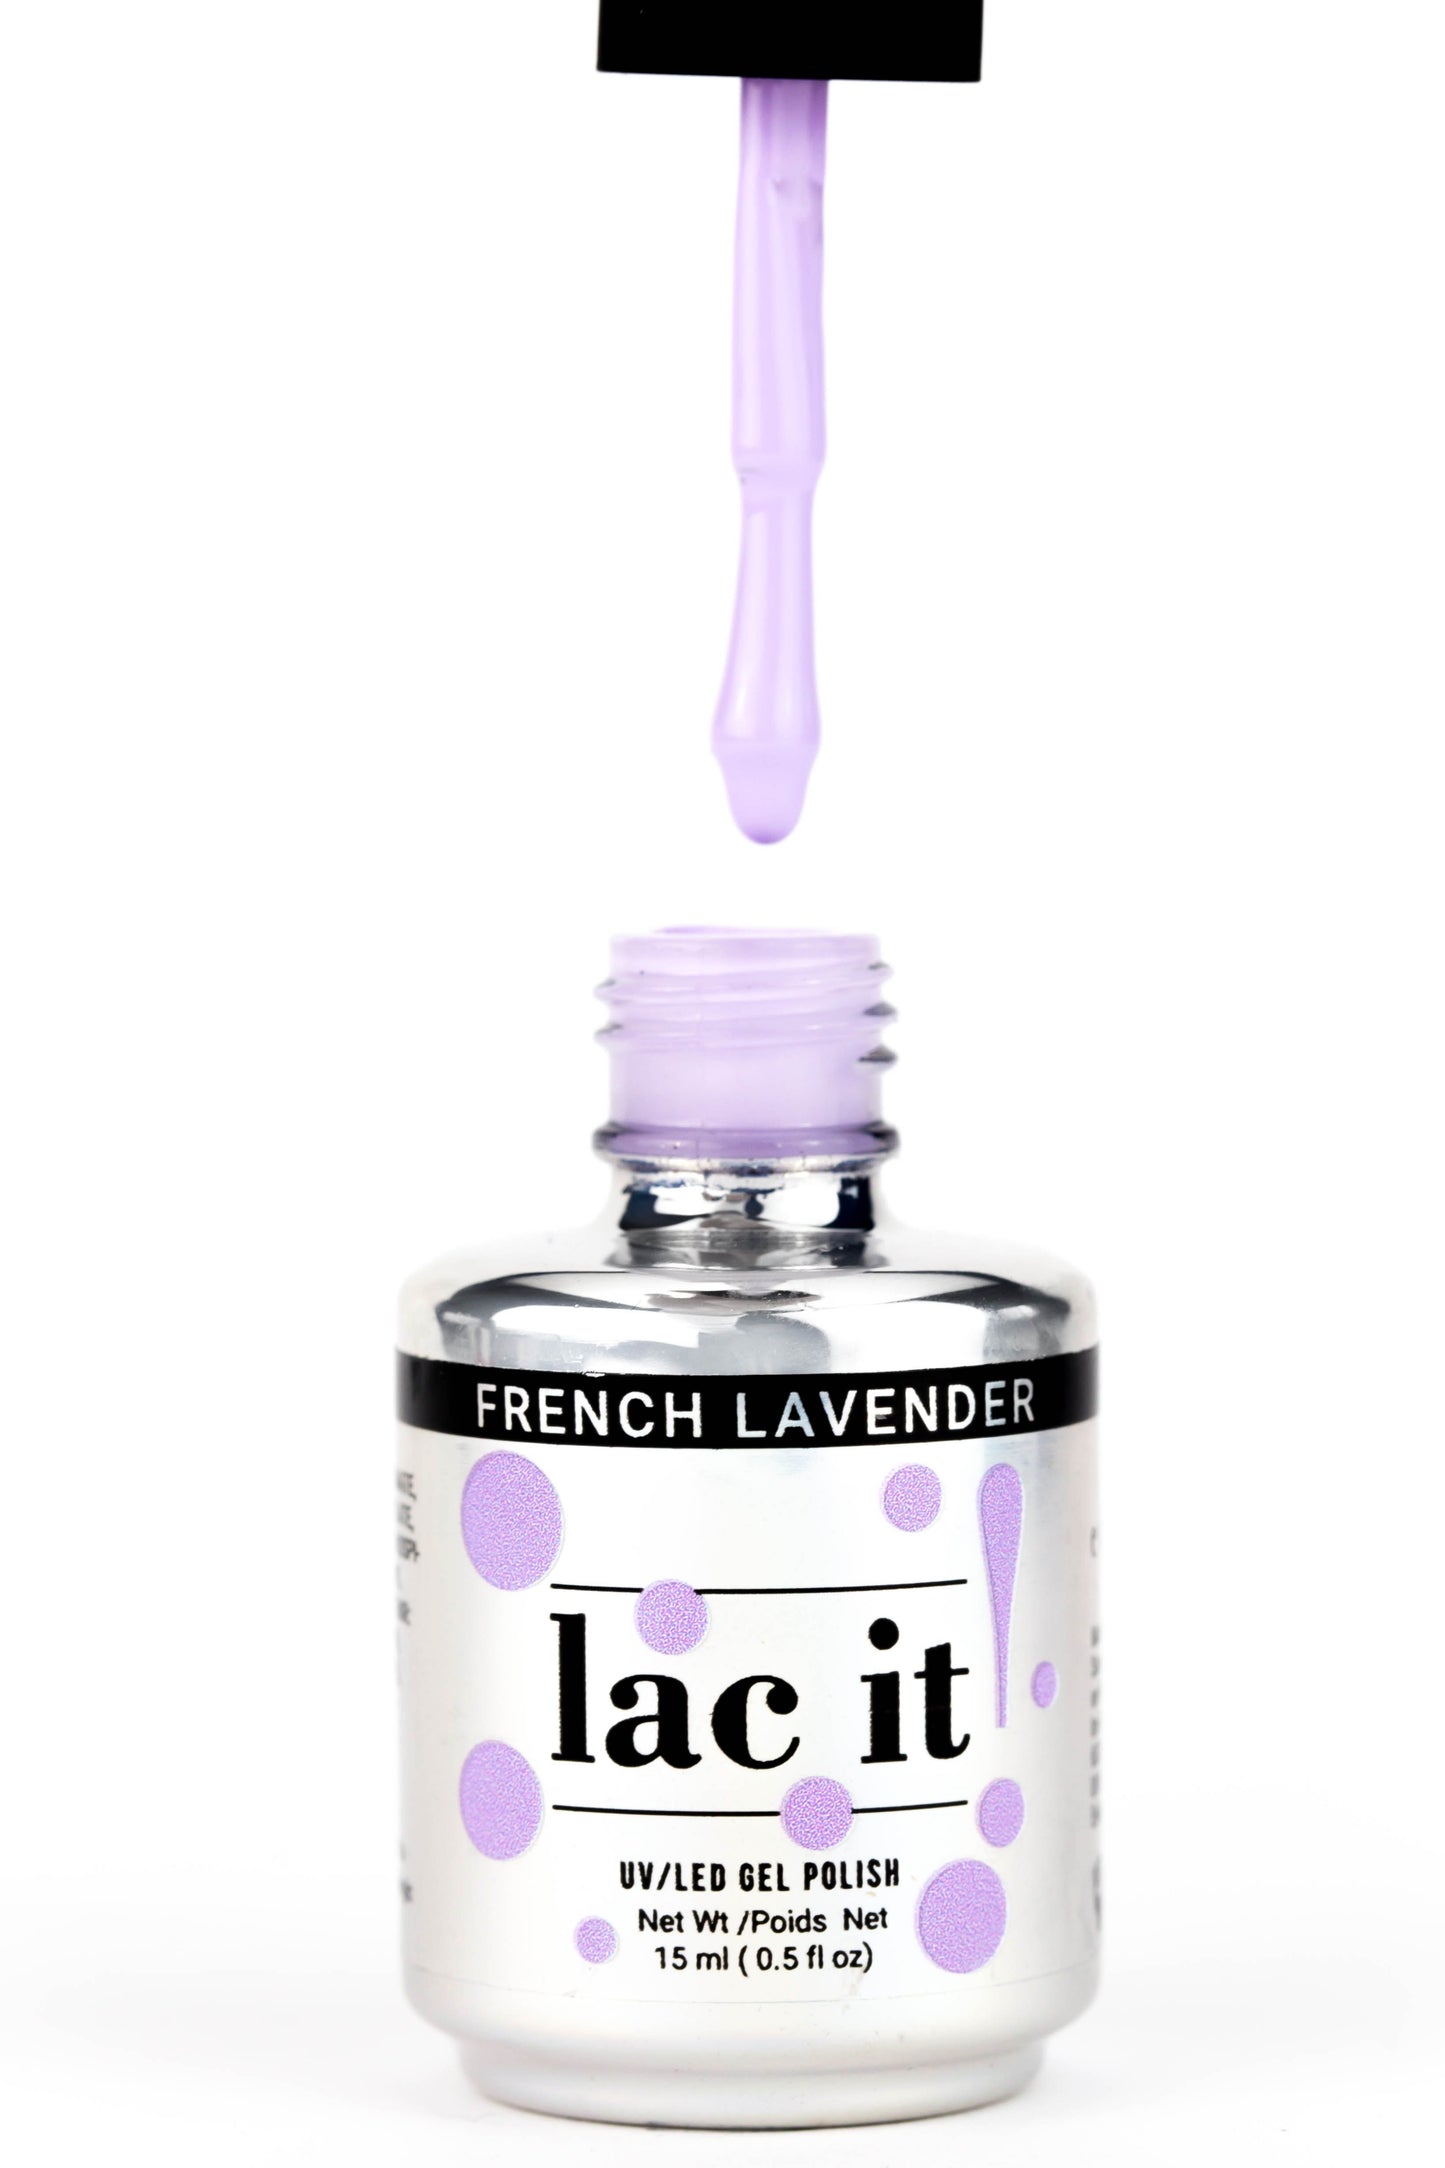 French Lavender - lac it! Gel Polish